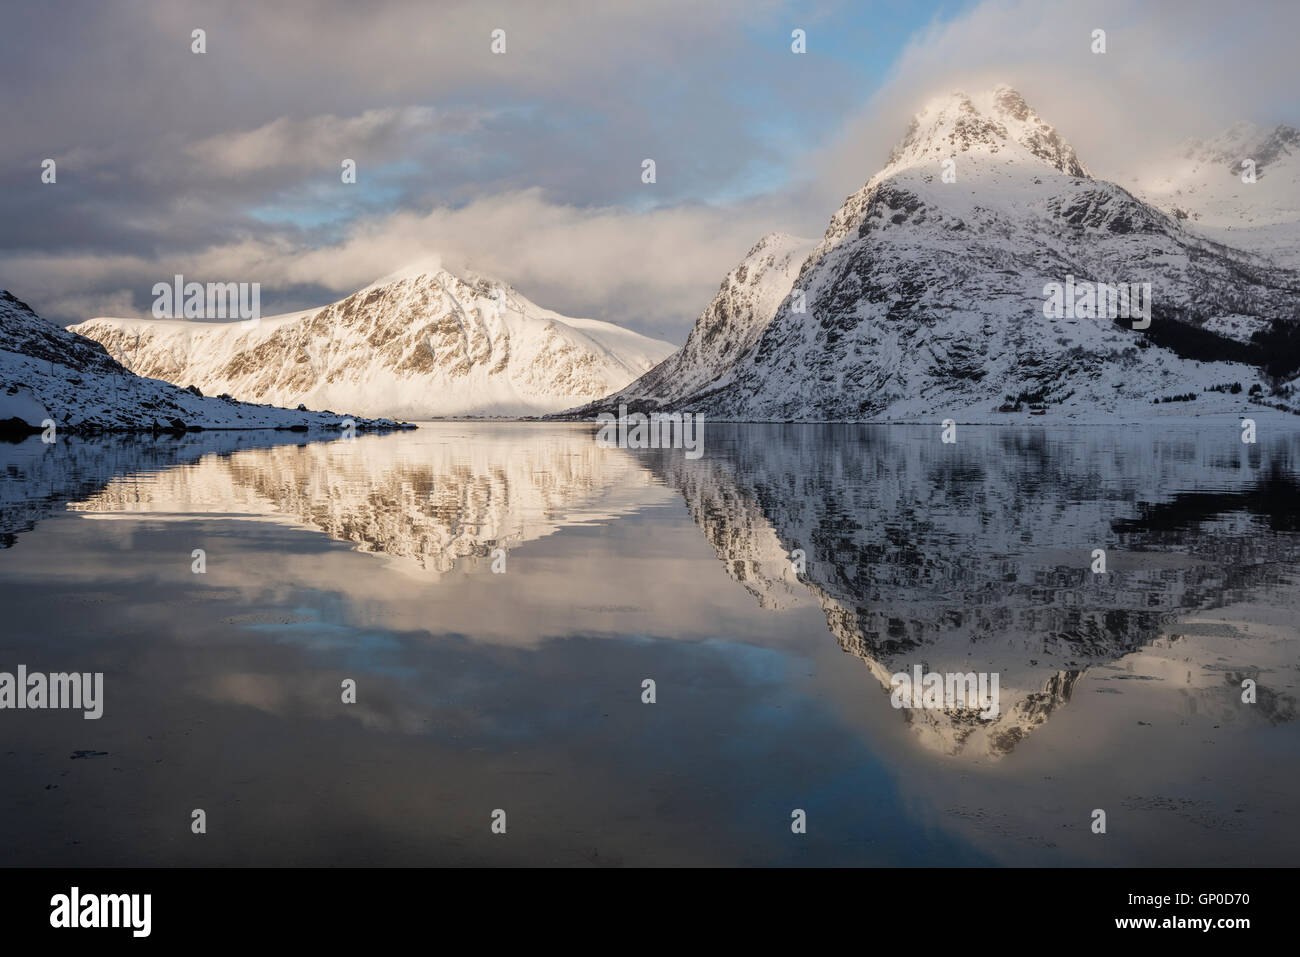 Winter mountain reflections in calm water of Flakstadpollen, Flakstadøy, Lofoten Islands, Norway Stock Photo